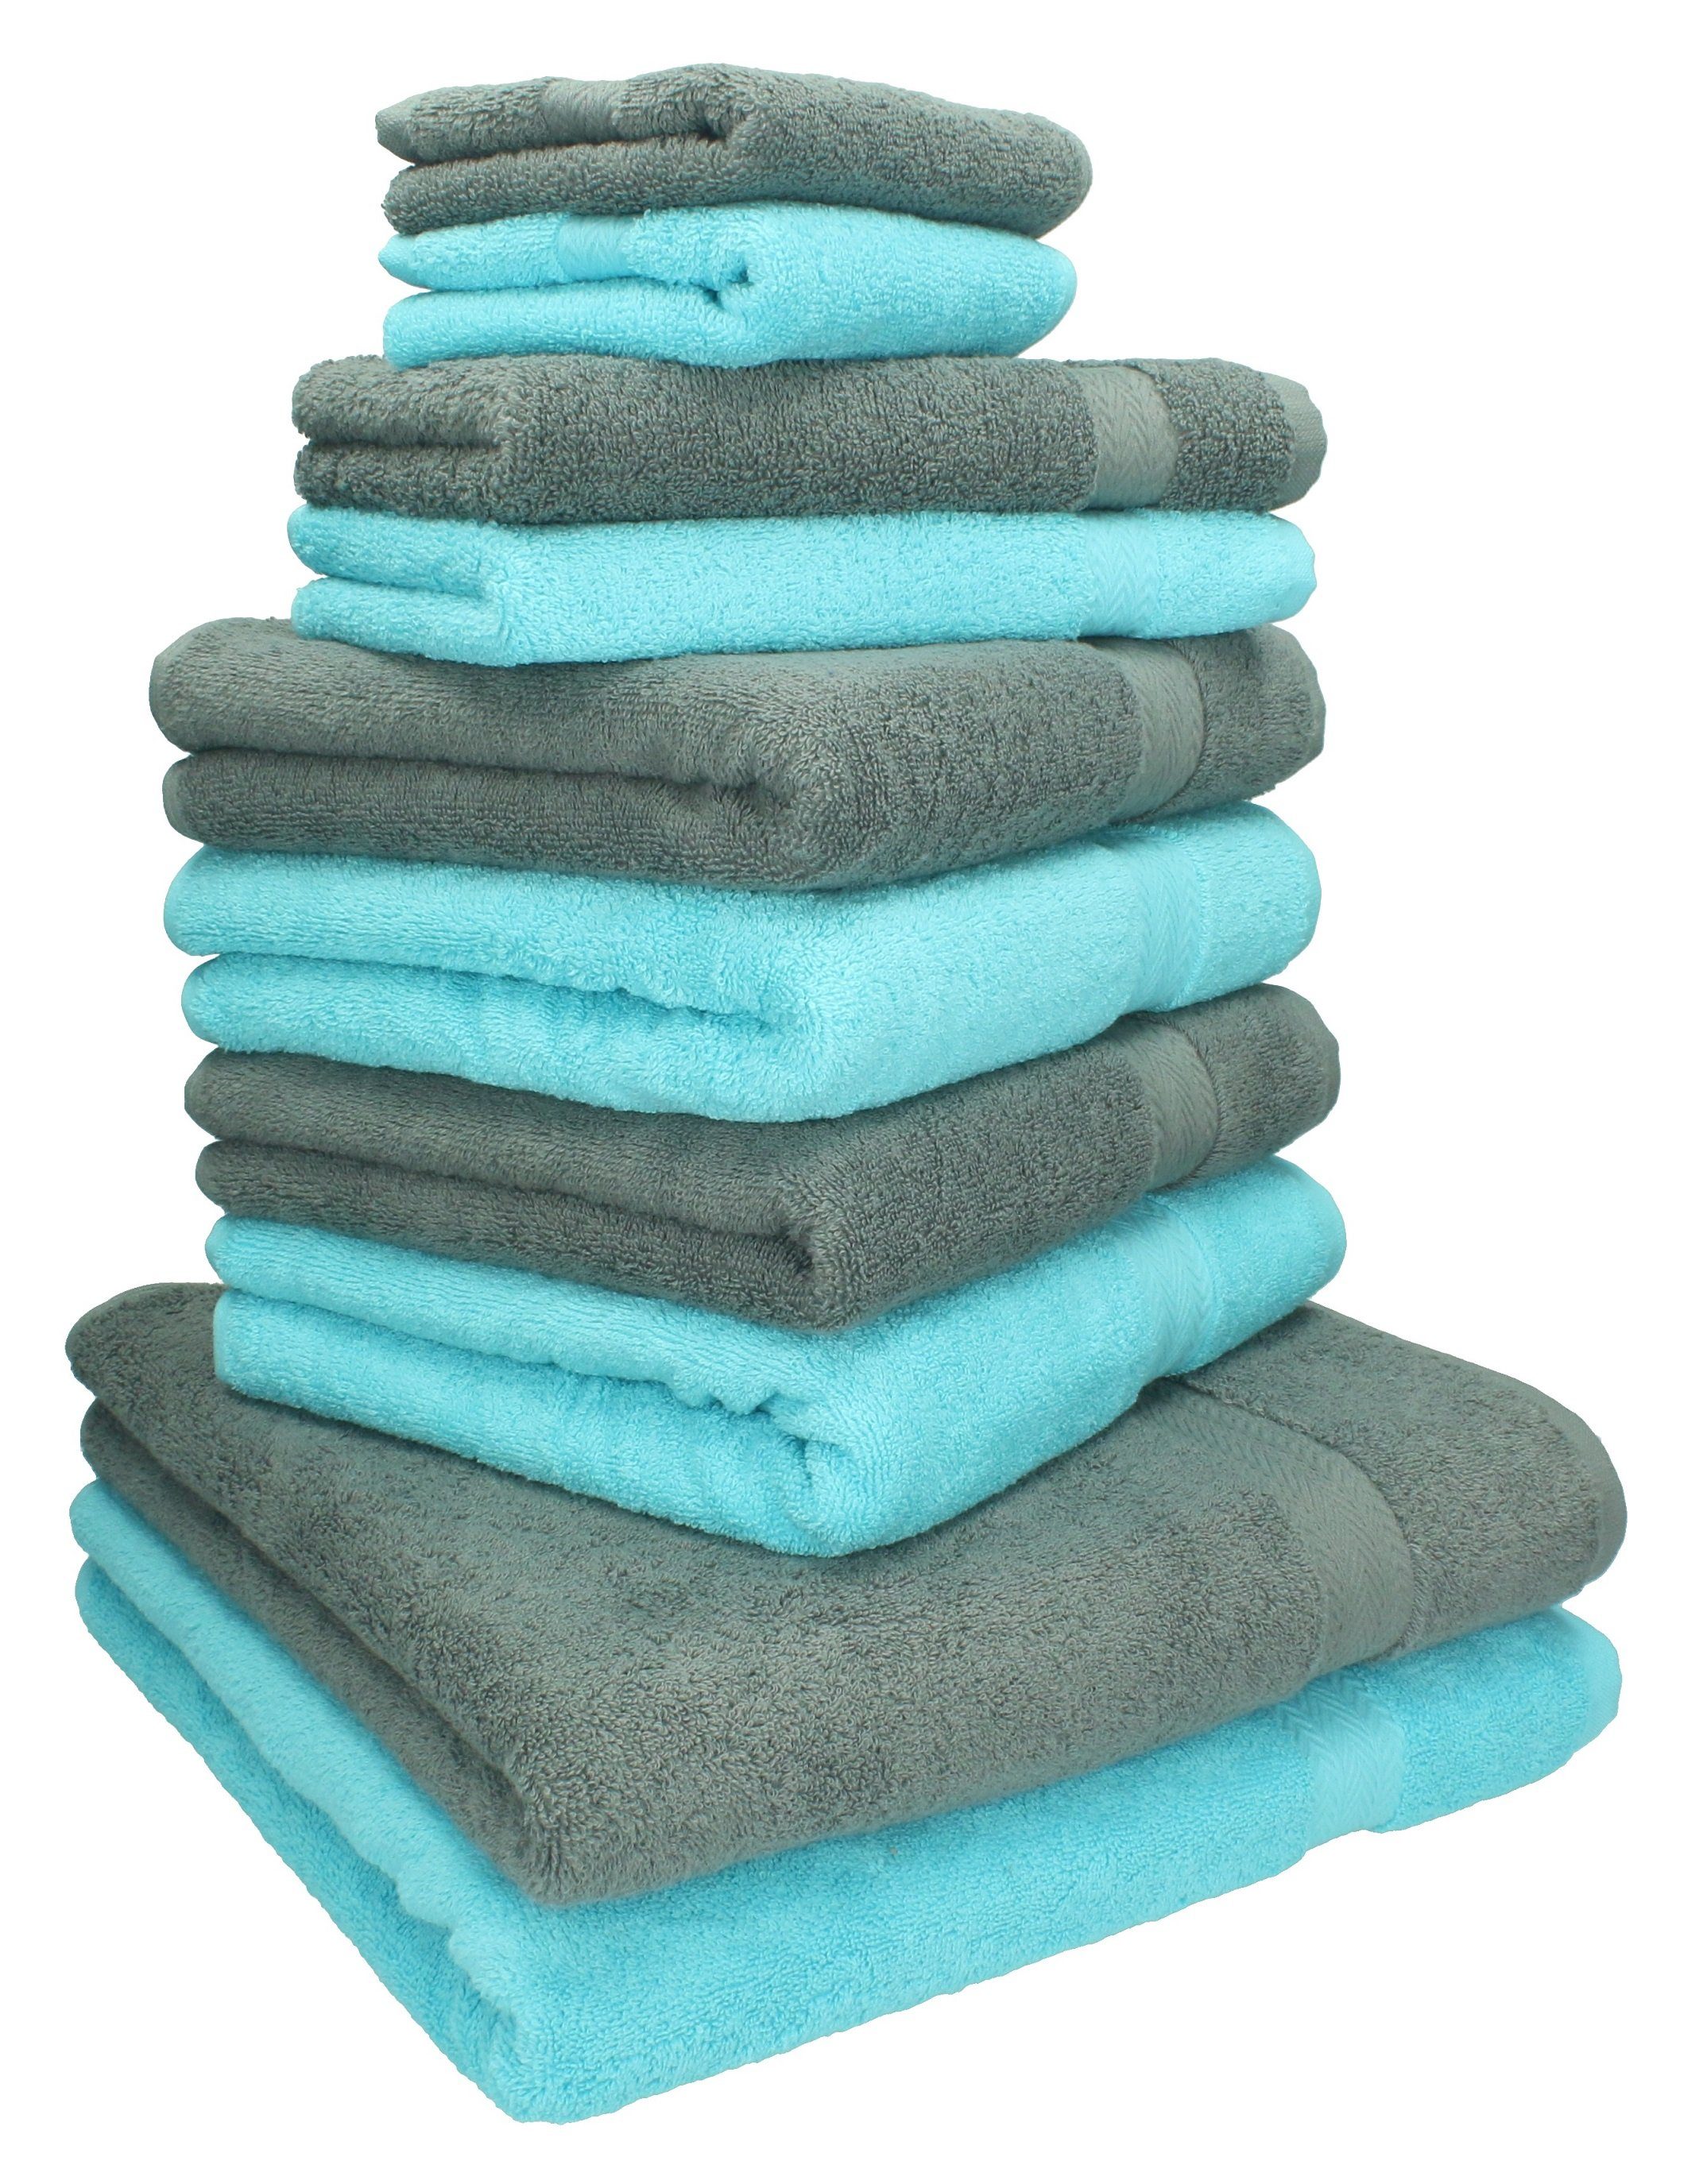 Betz Handtuch türkis Handtuch-Set anthrazit 100% grau, Farbe 10-TLG. Set Classic und Baumwolle